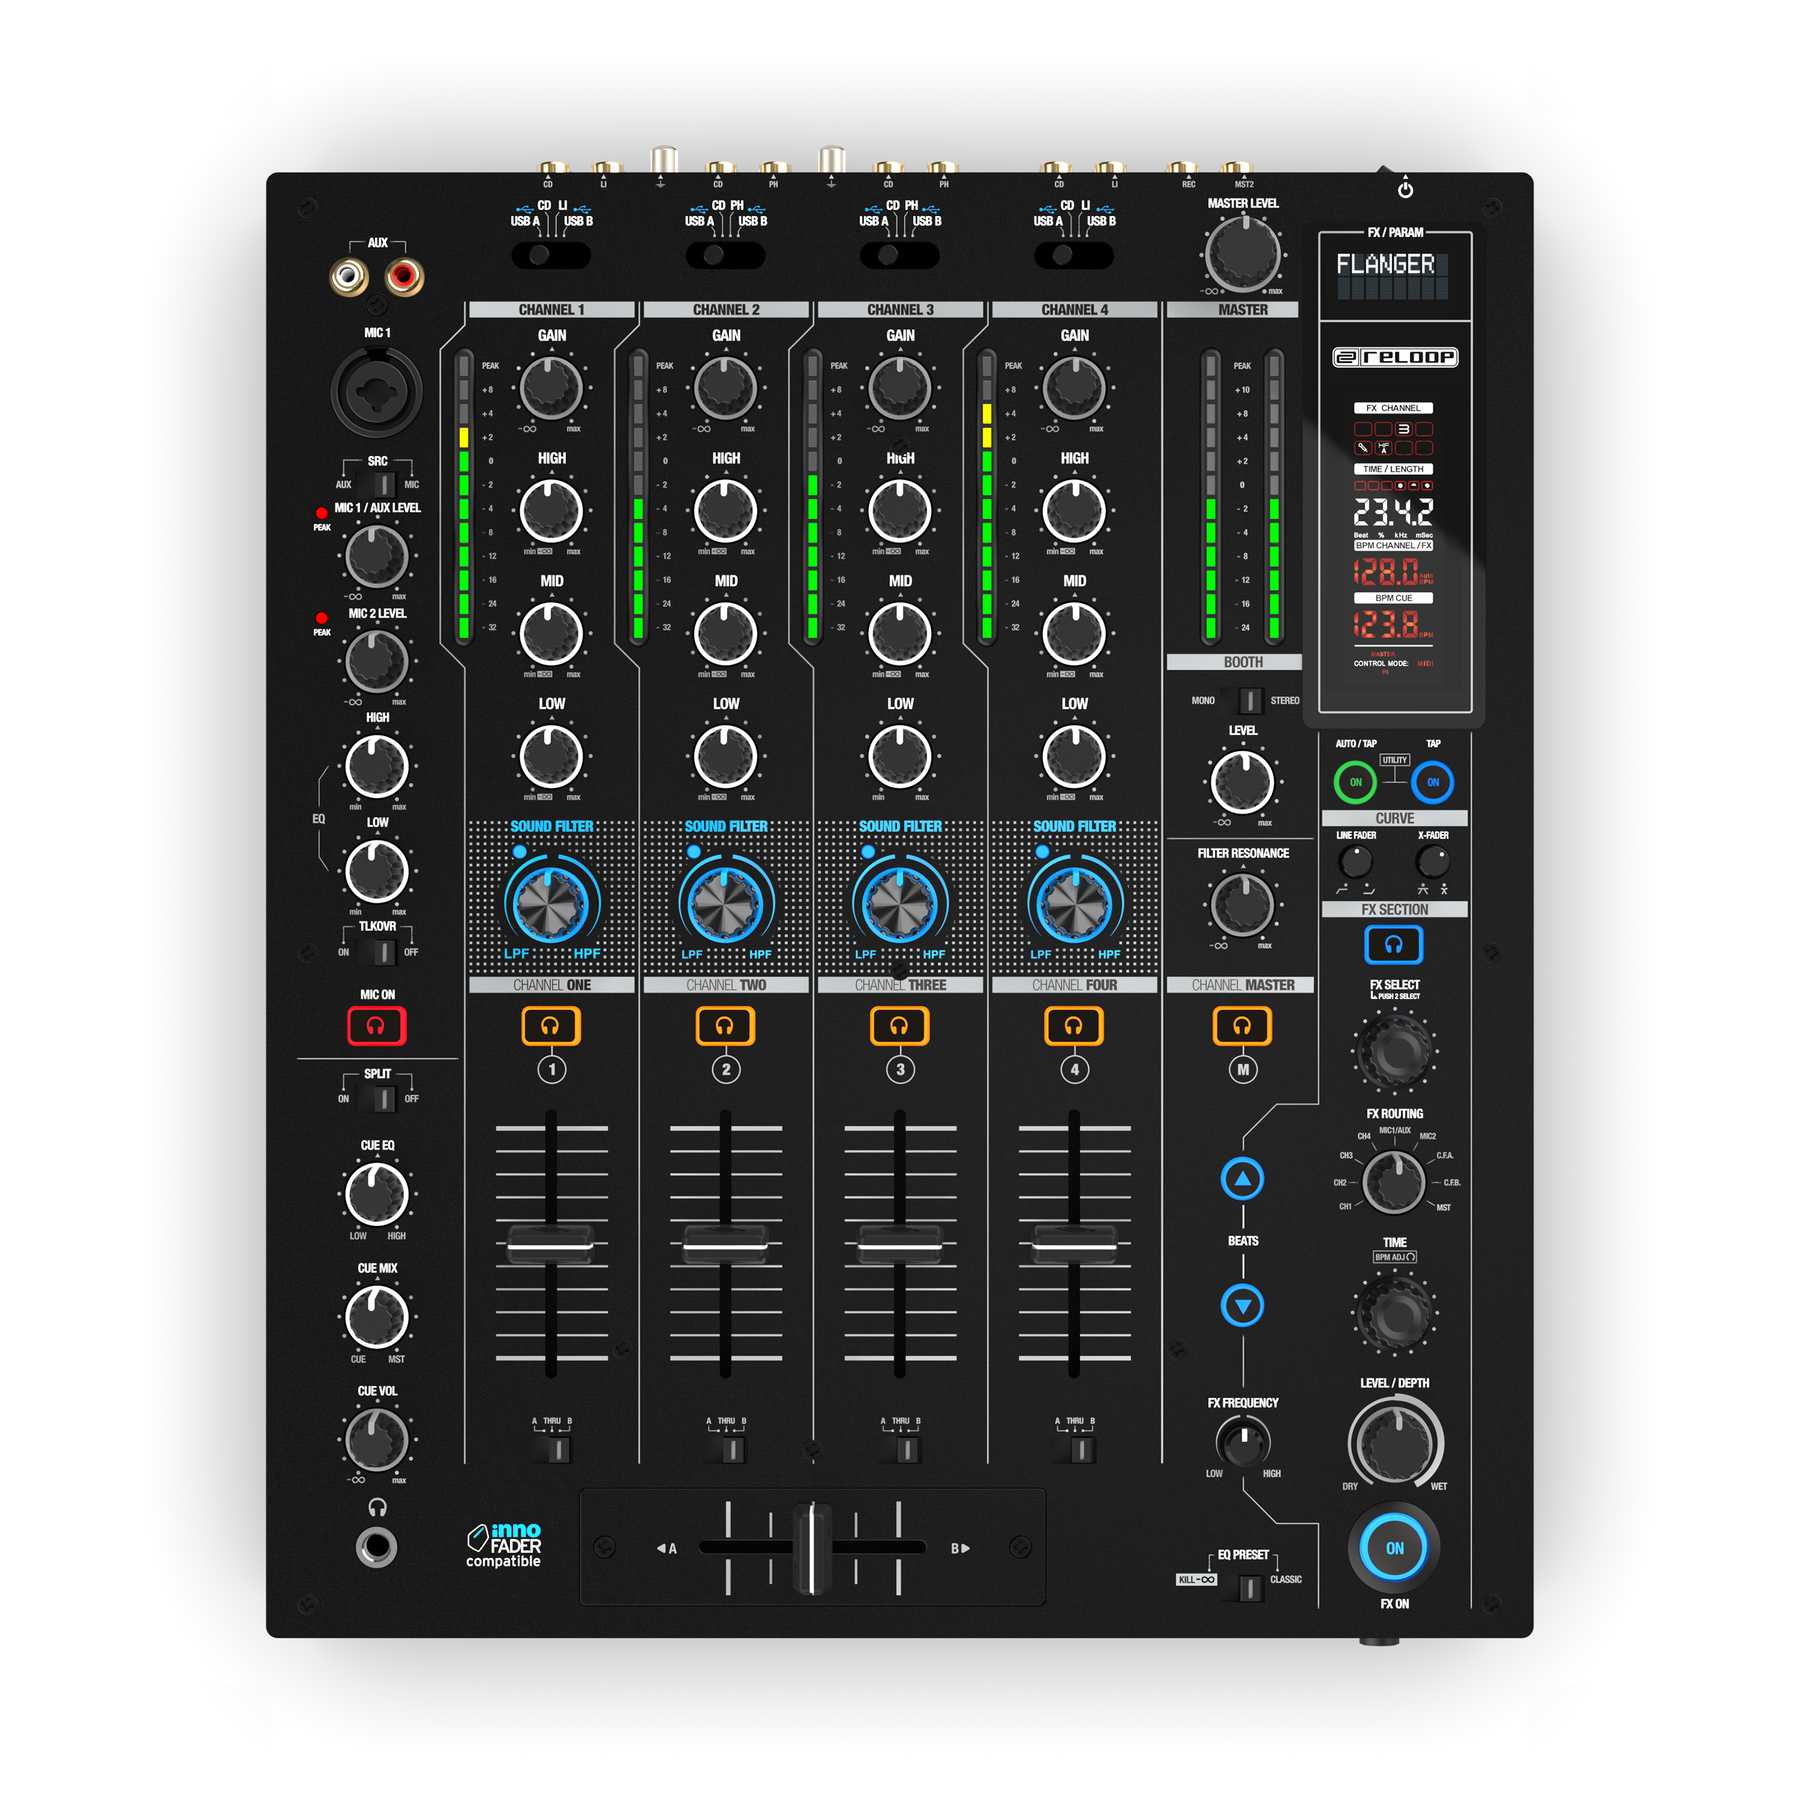 Table de mixage 12 canaux avec multiples sources audio intégrées